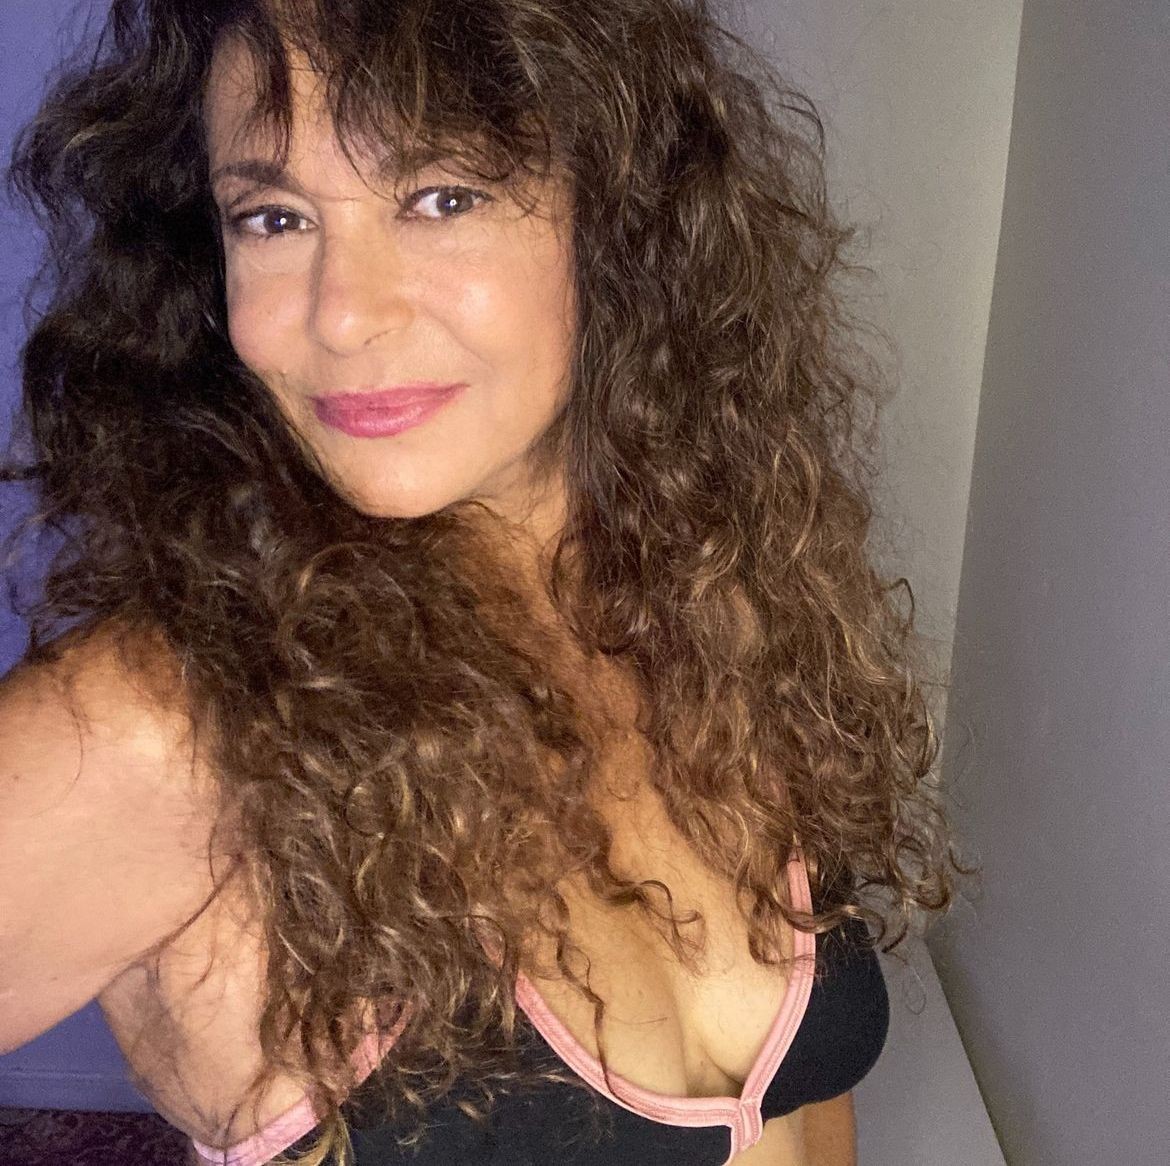 A atriz Giovanna Gold, que esteve na primeira versão de "Pantanal", começou a produzir conteúdo adulto no início deste ano — Foto: Reprodução/Instagram